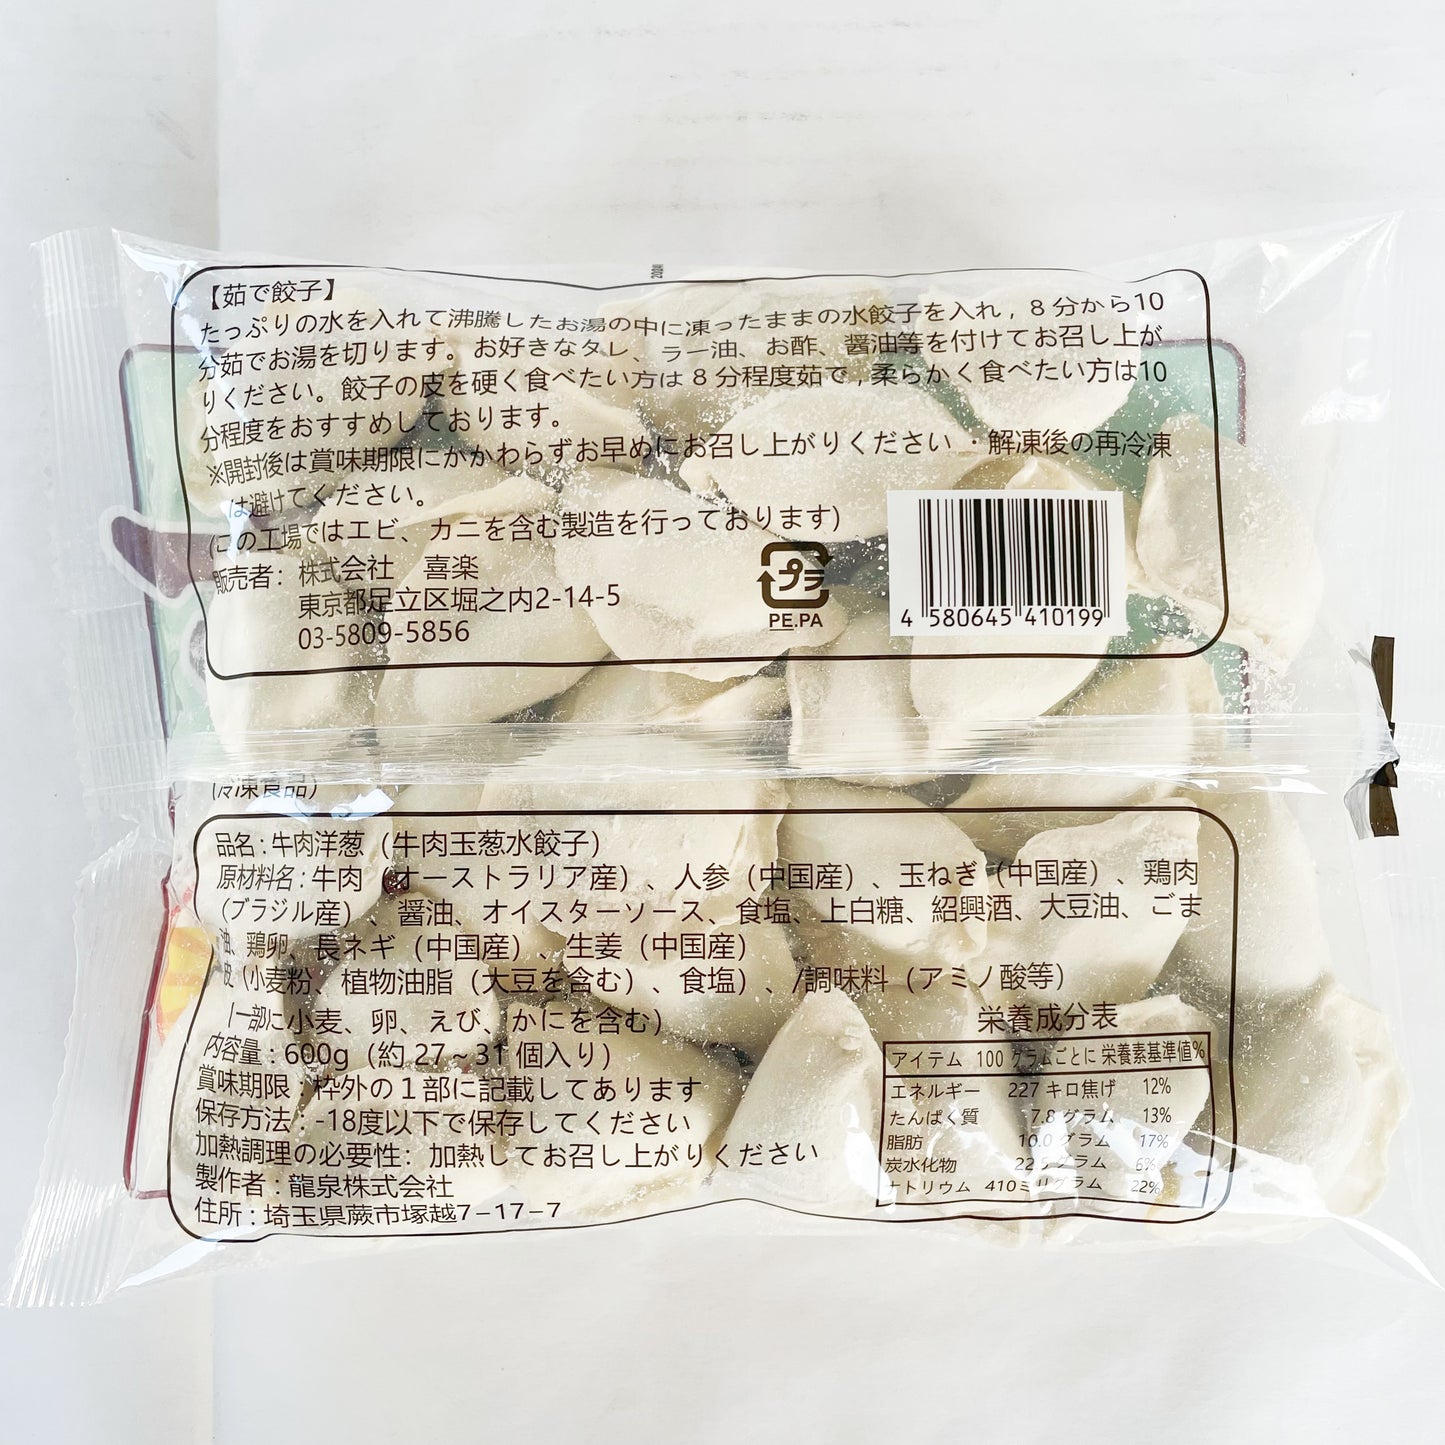 日日水餃子 牛肉洋葱水餃子 約30個入日日餃子 厚皮 日本国内加工 日本産 600g